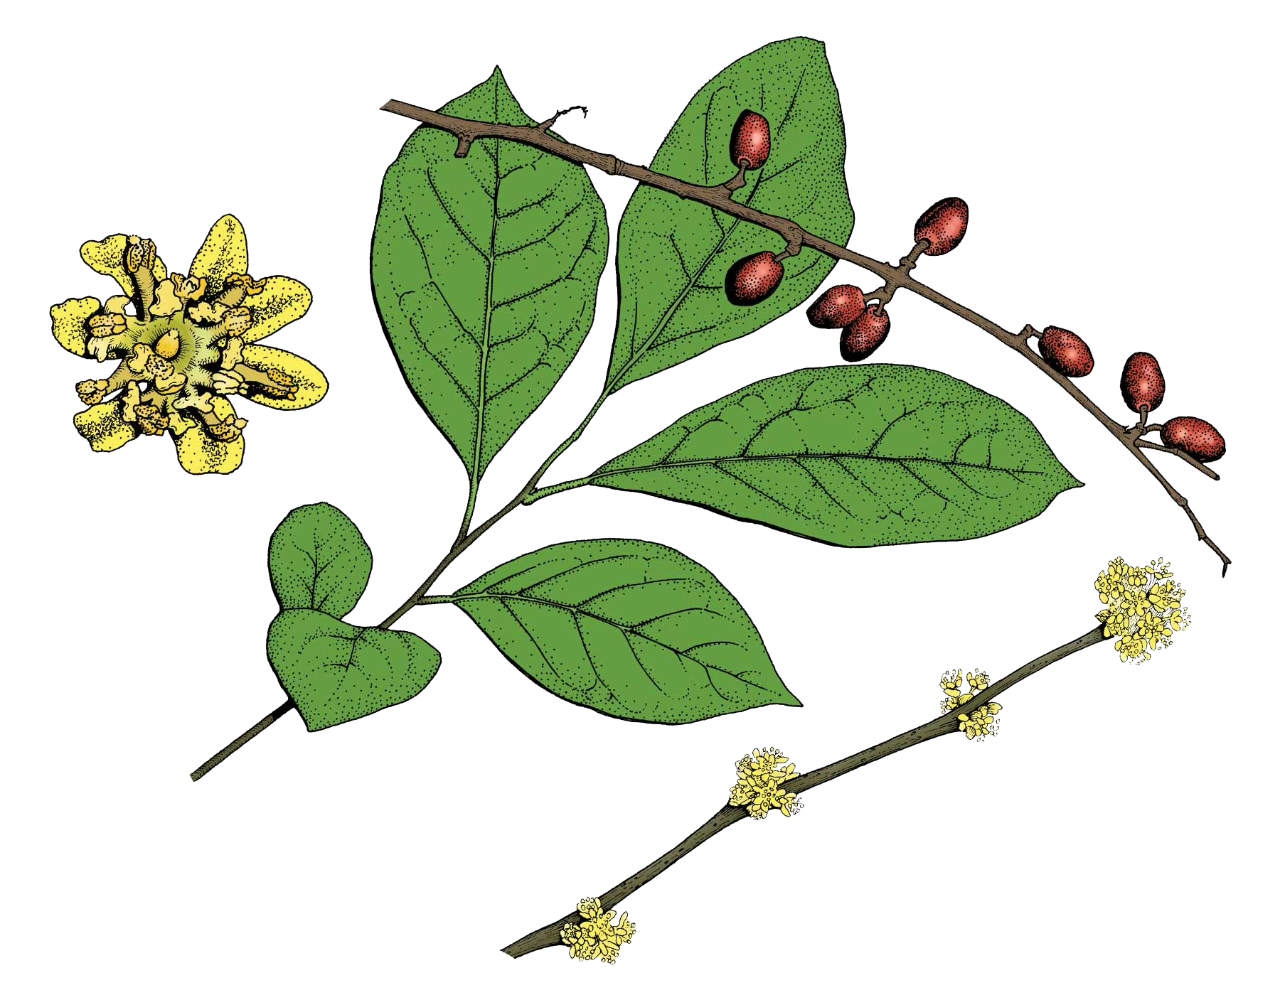 Drawing of a spicebush leaf